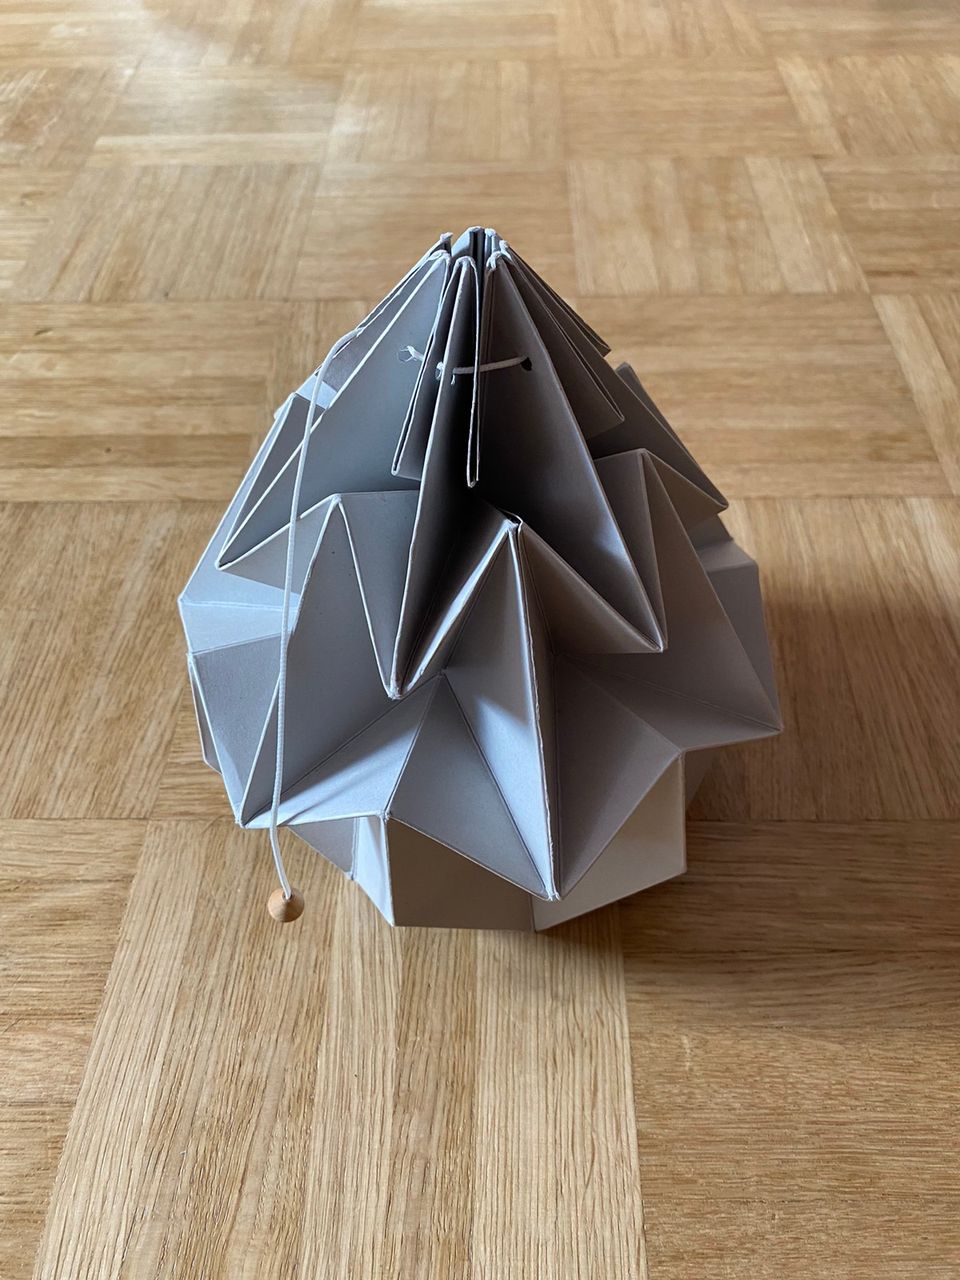 Studio snowpuppe harmaa paperinen origami varjostin valaisimelle 2kpl